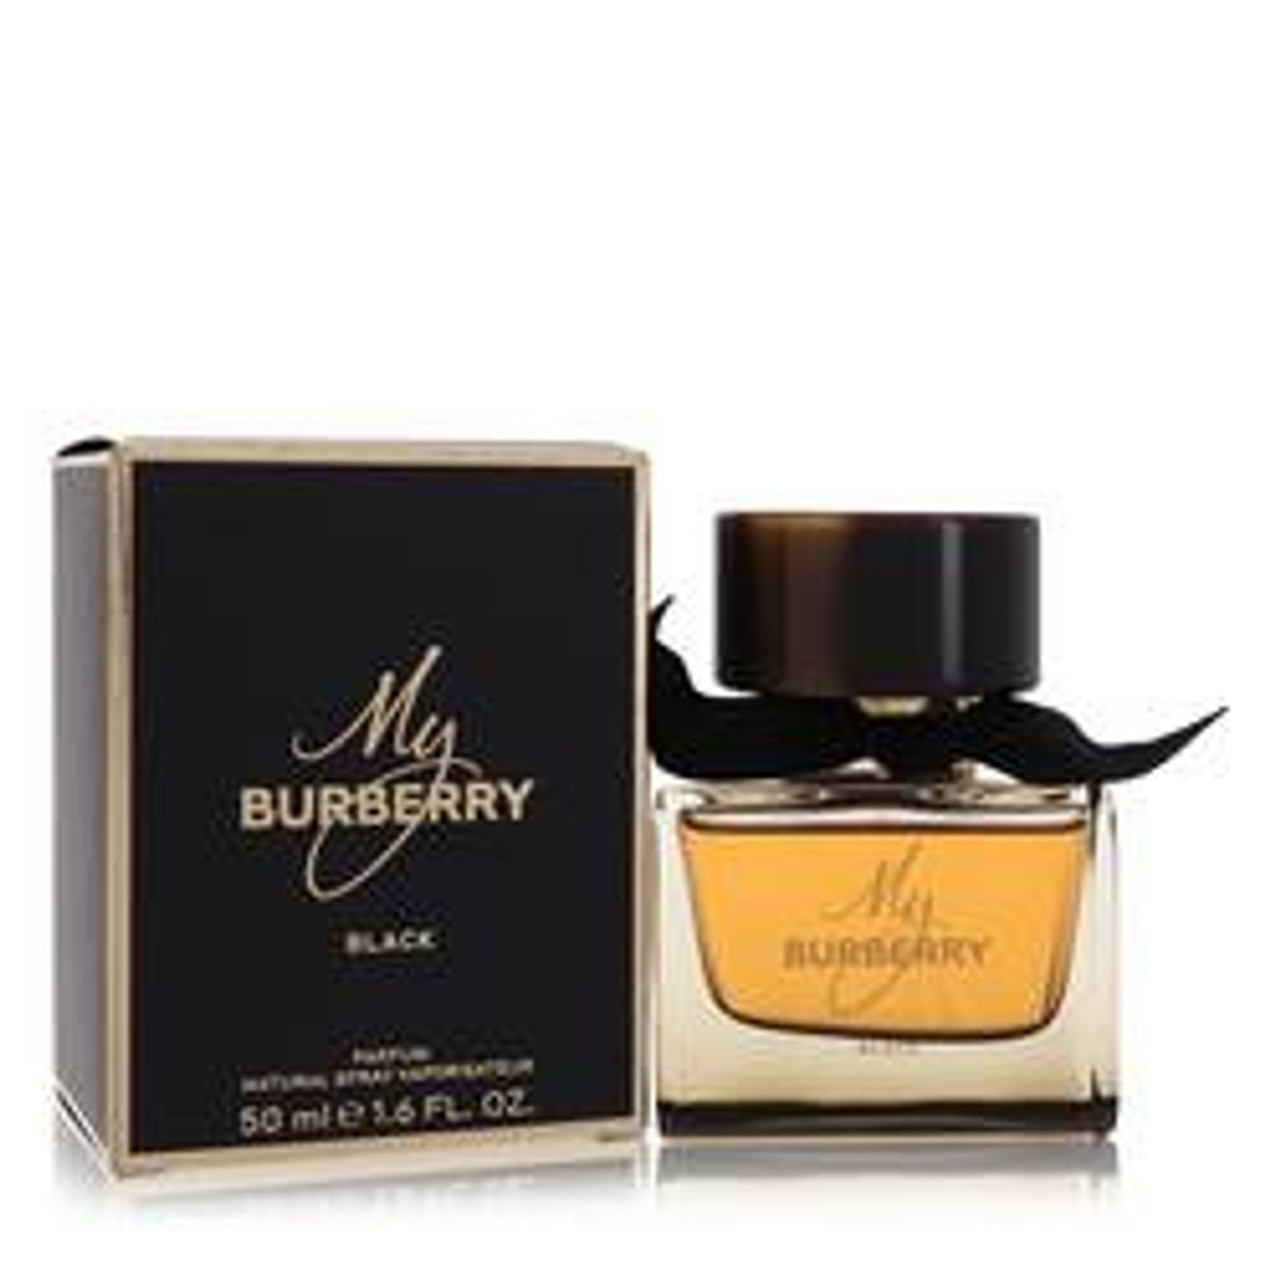 My Burberry Black Perfume By Burberry Eau De Parfum Spray 1.6 oz for Women - *Pre-Order